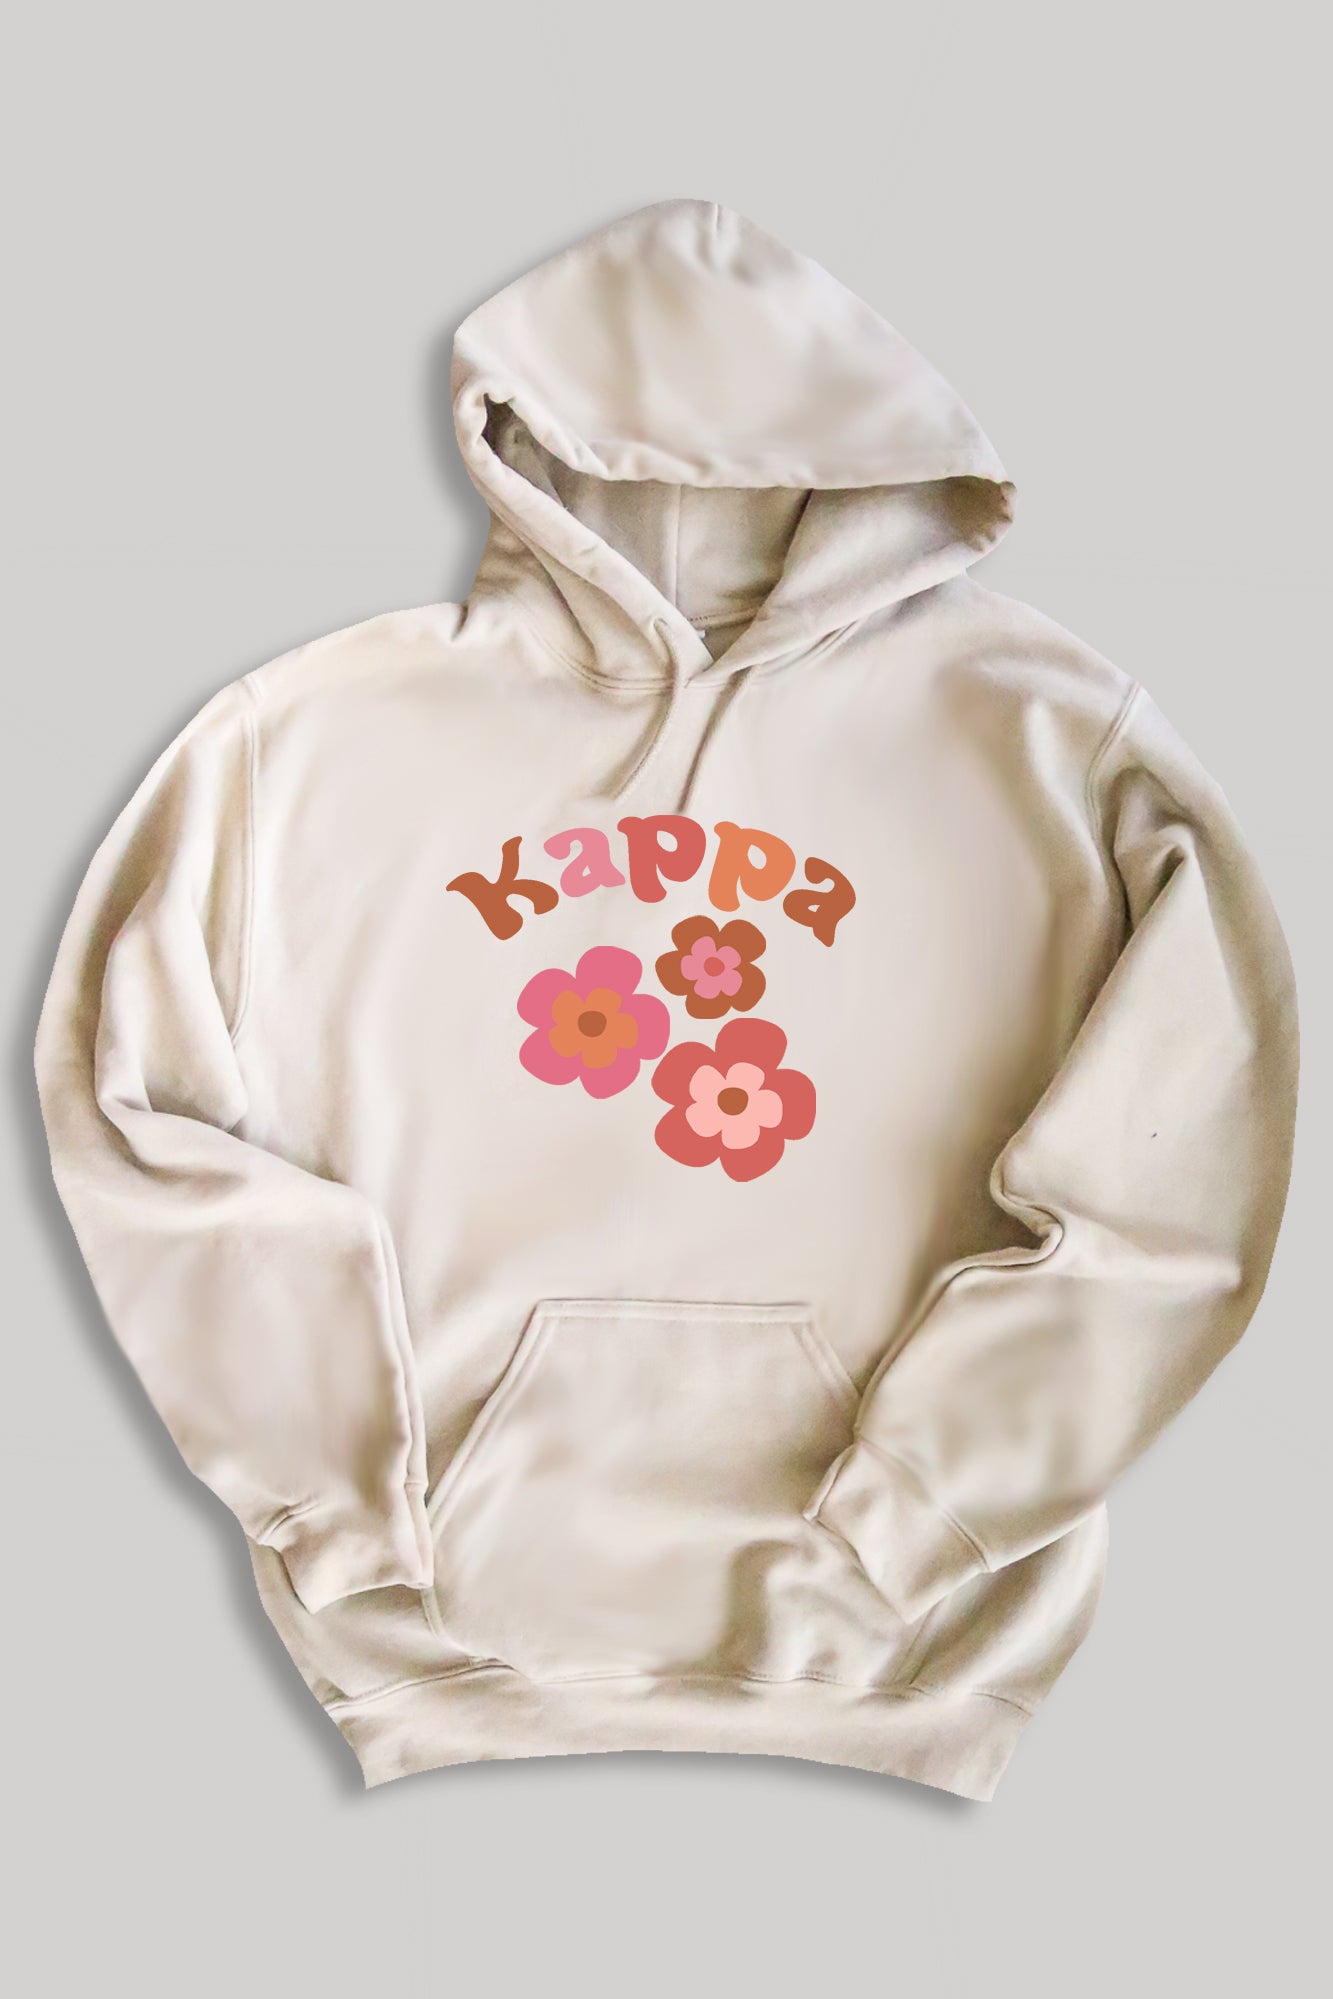 Groovy hoodie - Kappa